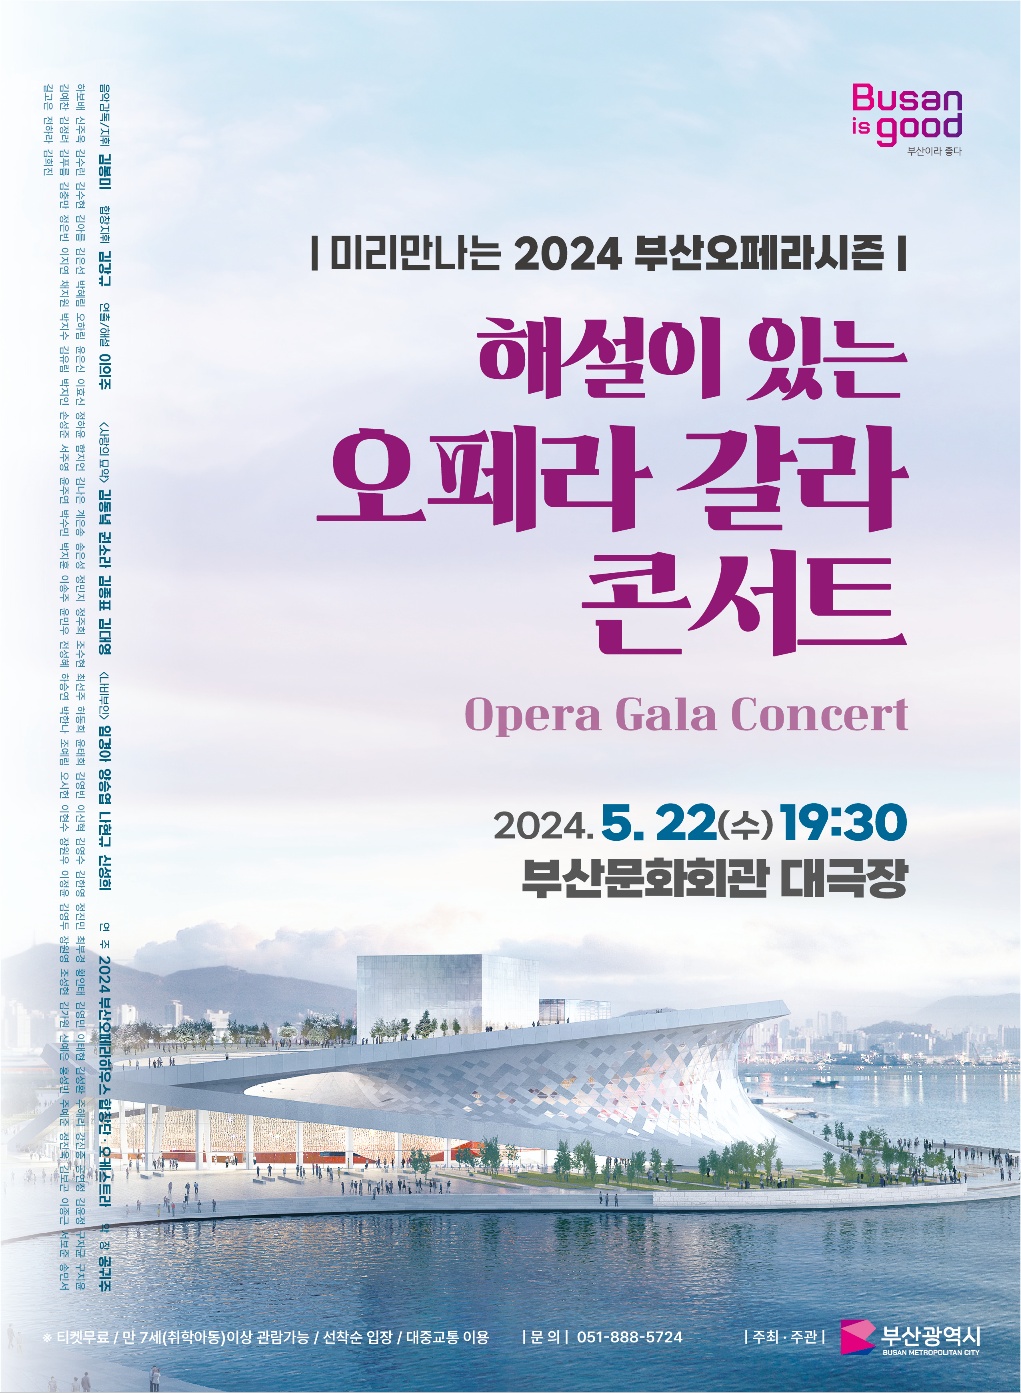 미리만나는 2024 부산오페라시즌 - 해설이 있는 오페라 갈라 콘서트